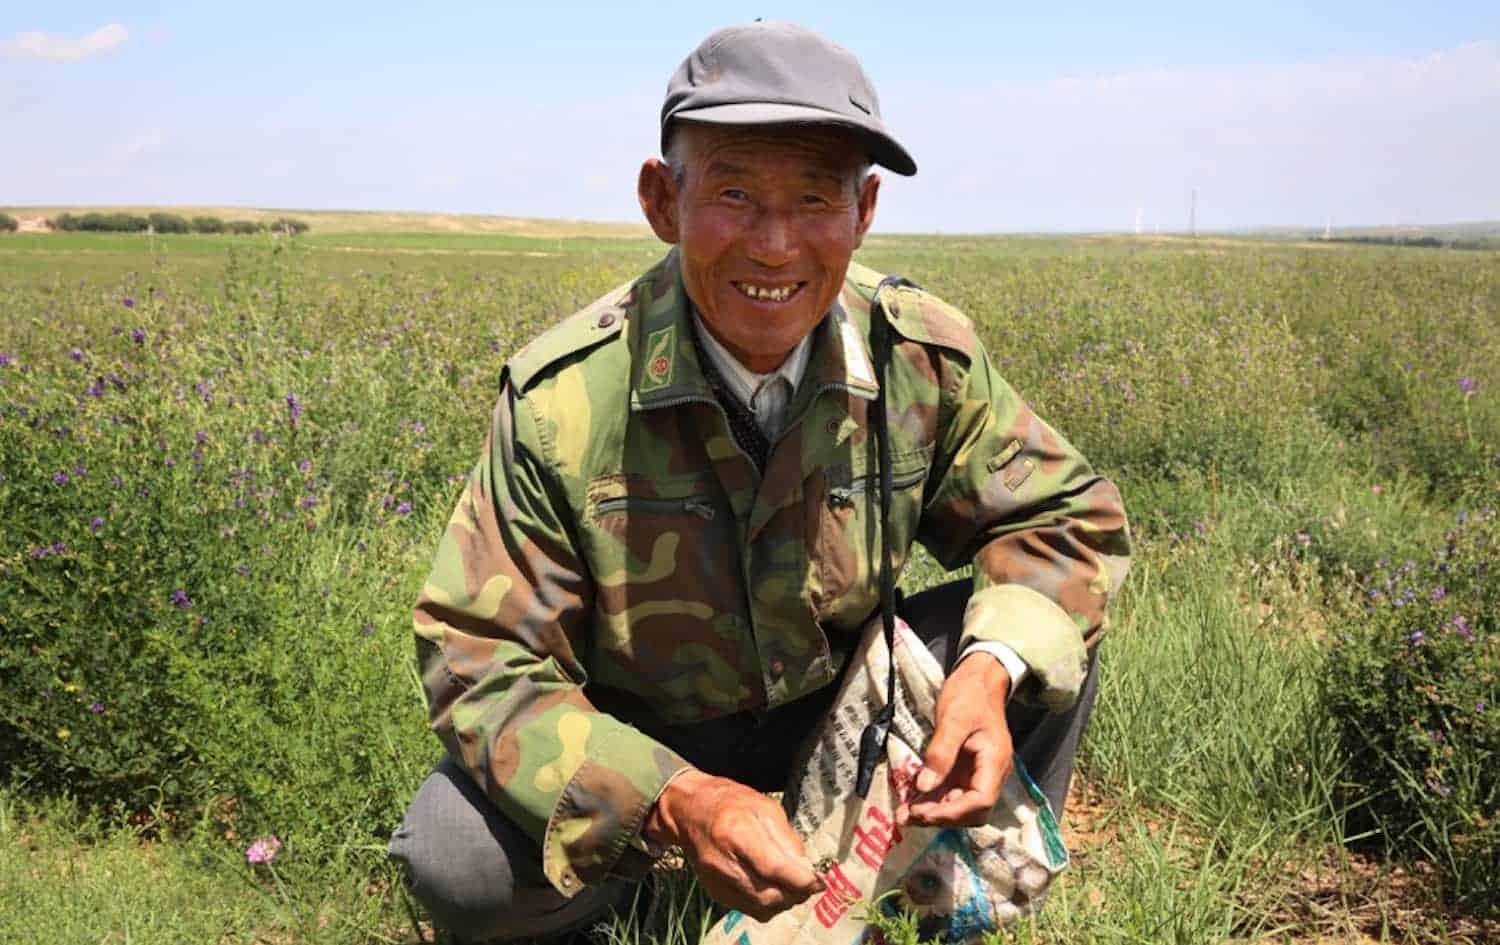 内蒙古农民re-harnessing紫花苜蓿为饲料,种子,和更好的生活。